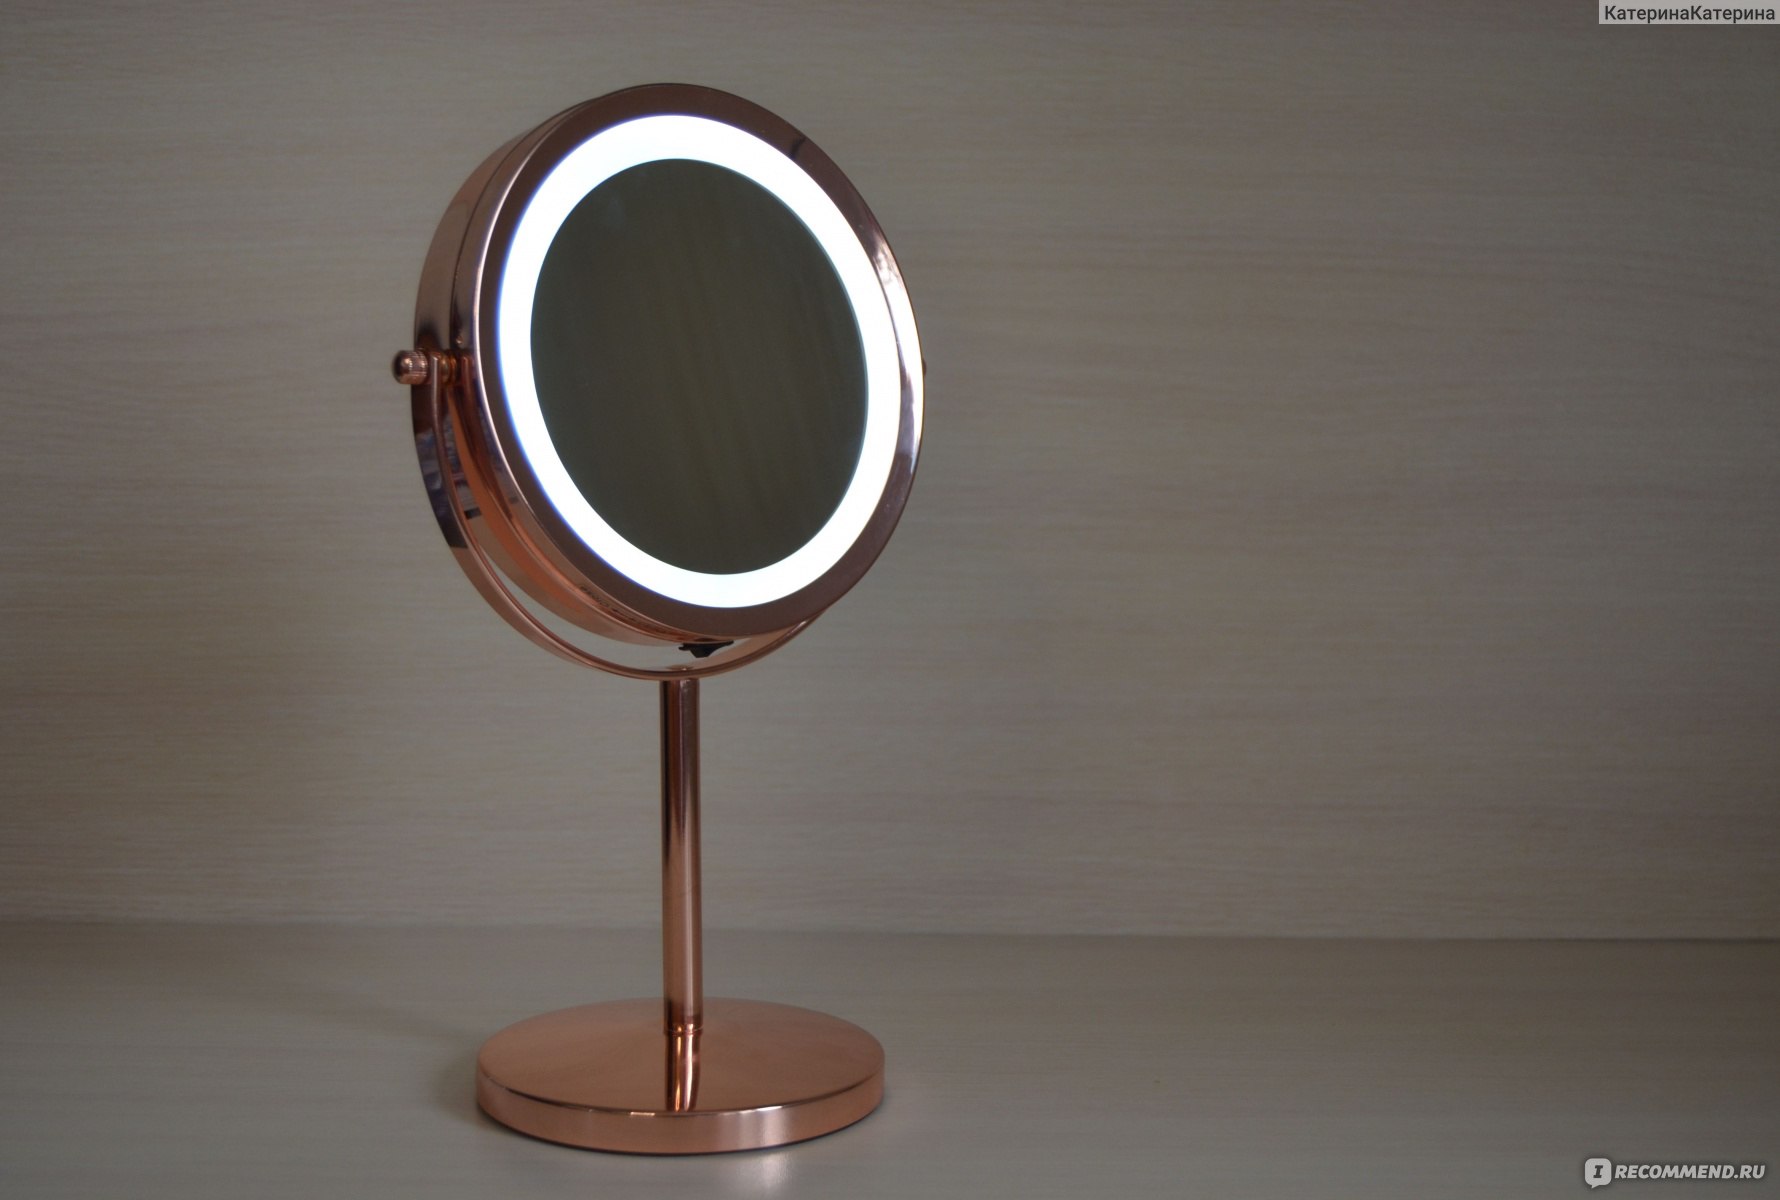 Выбираем зеркало для создания идеального макияжа